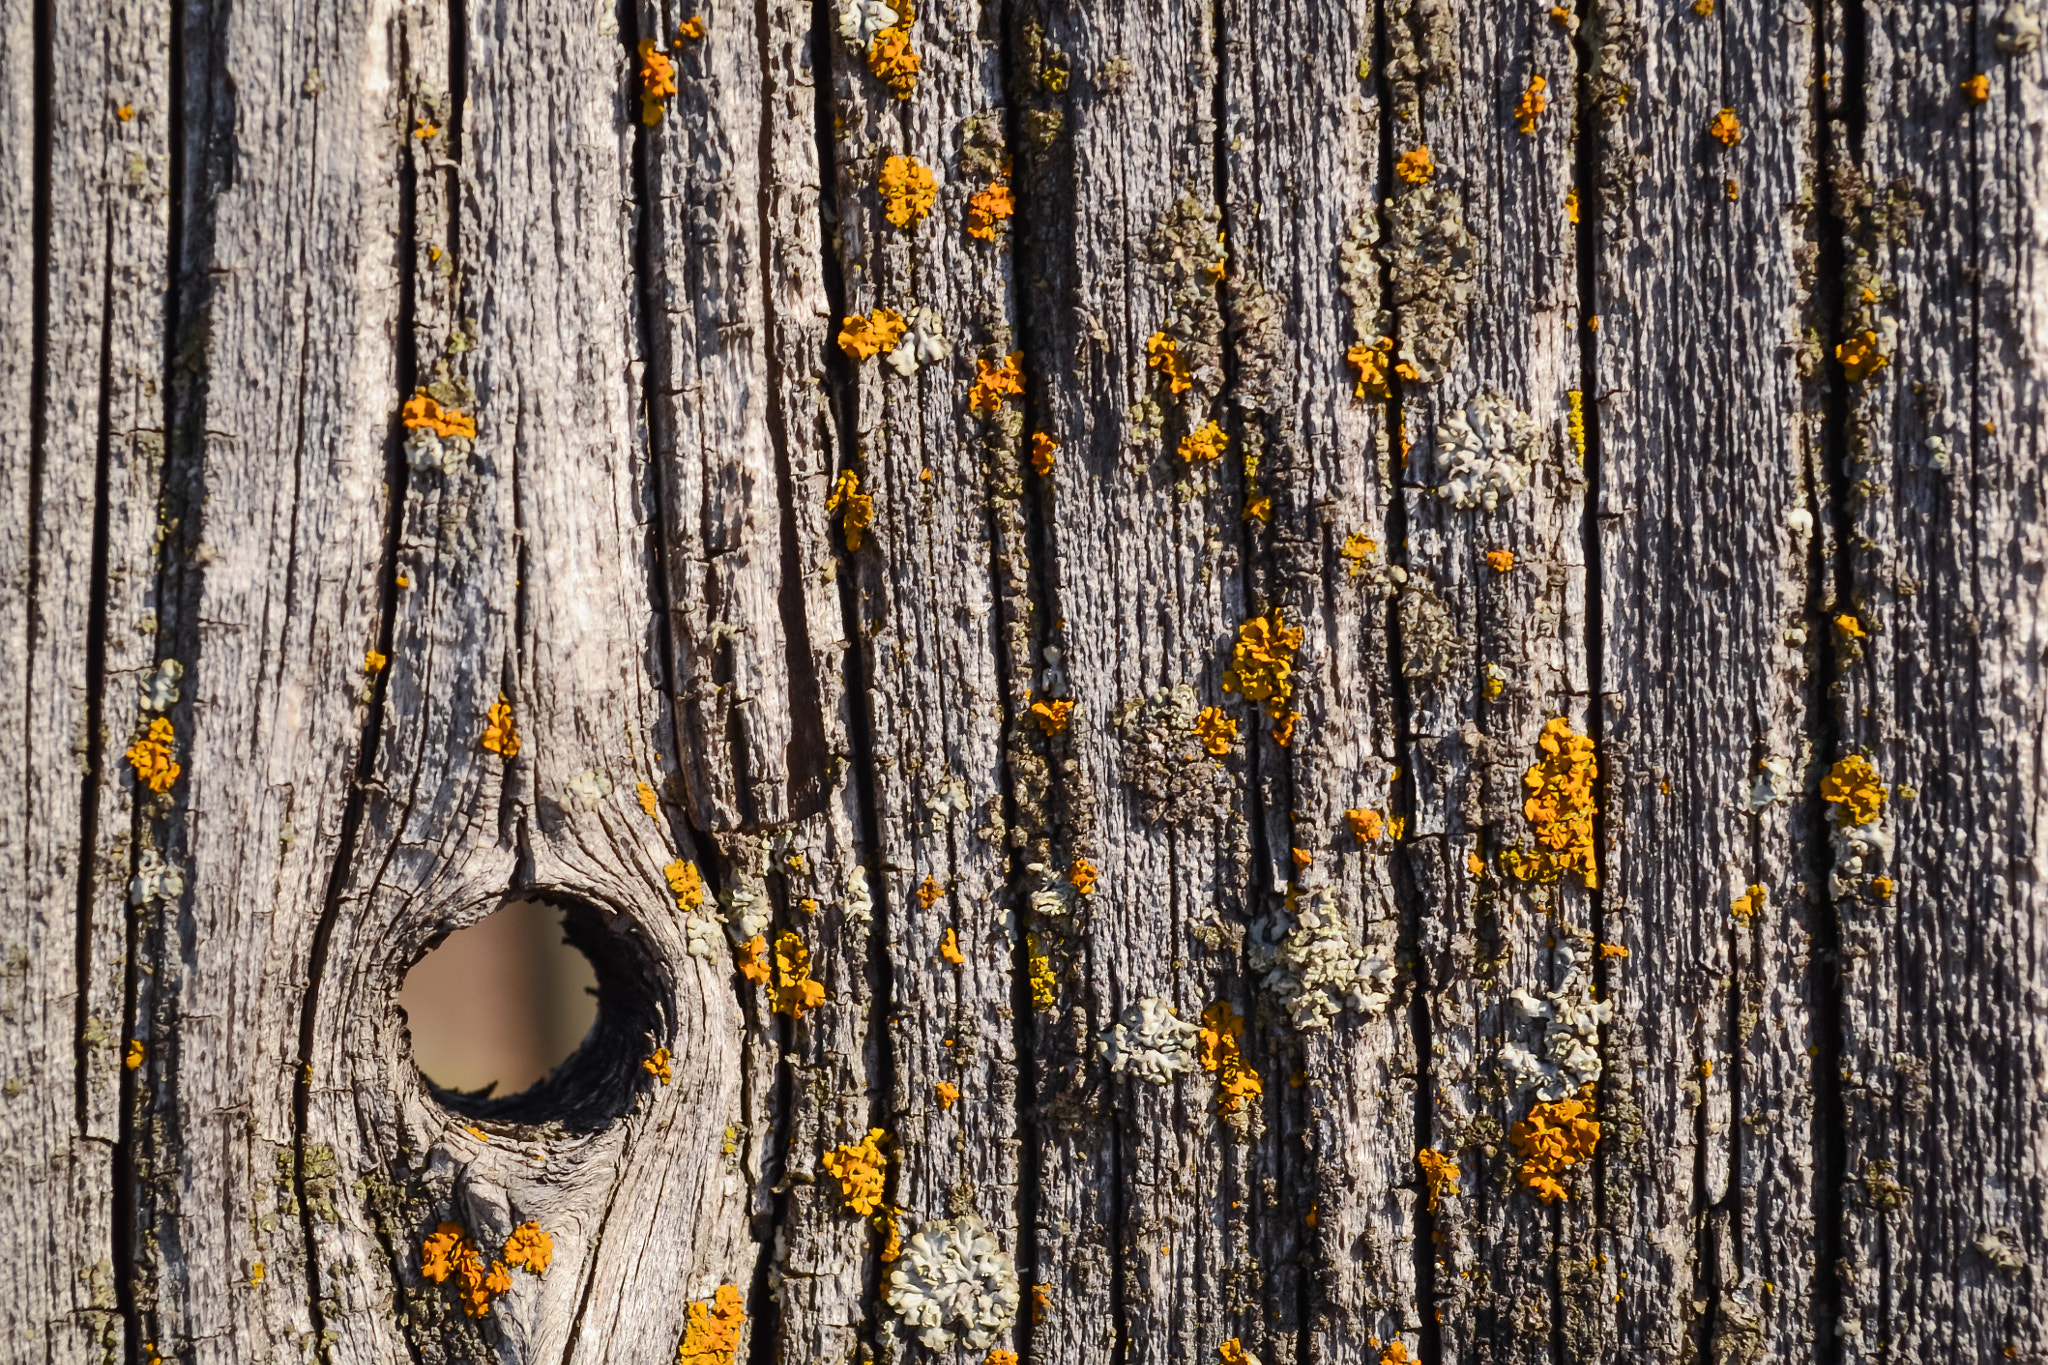 Lichen on a plank